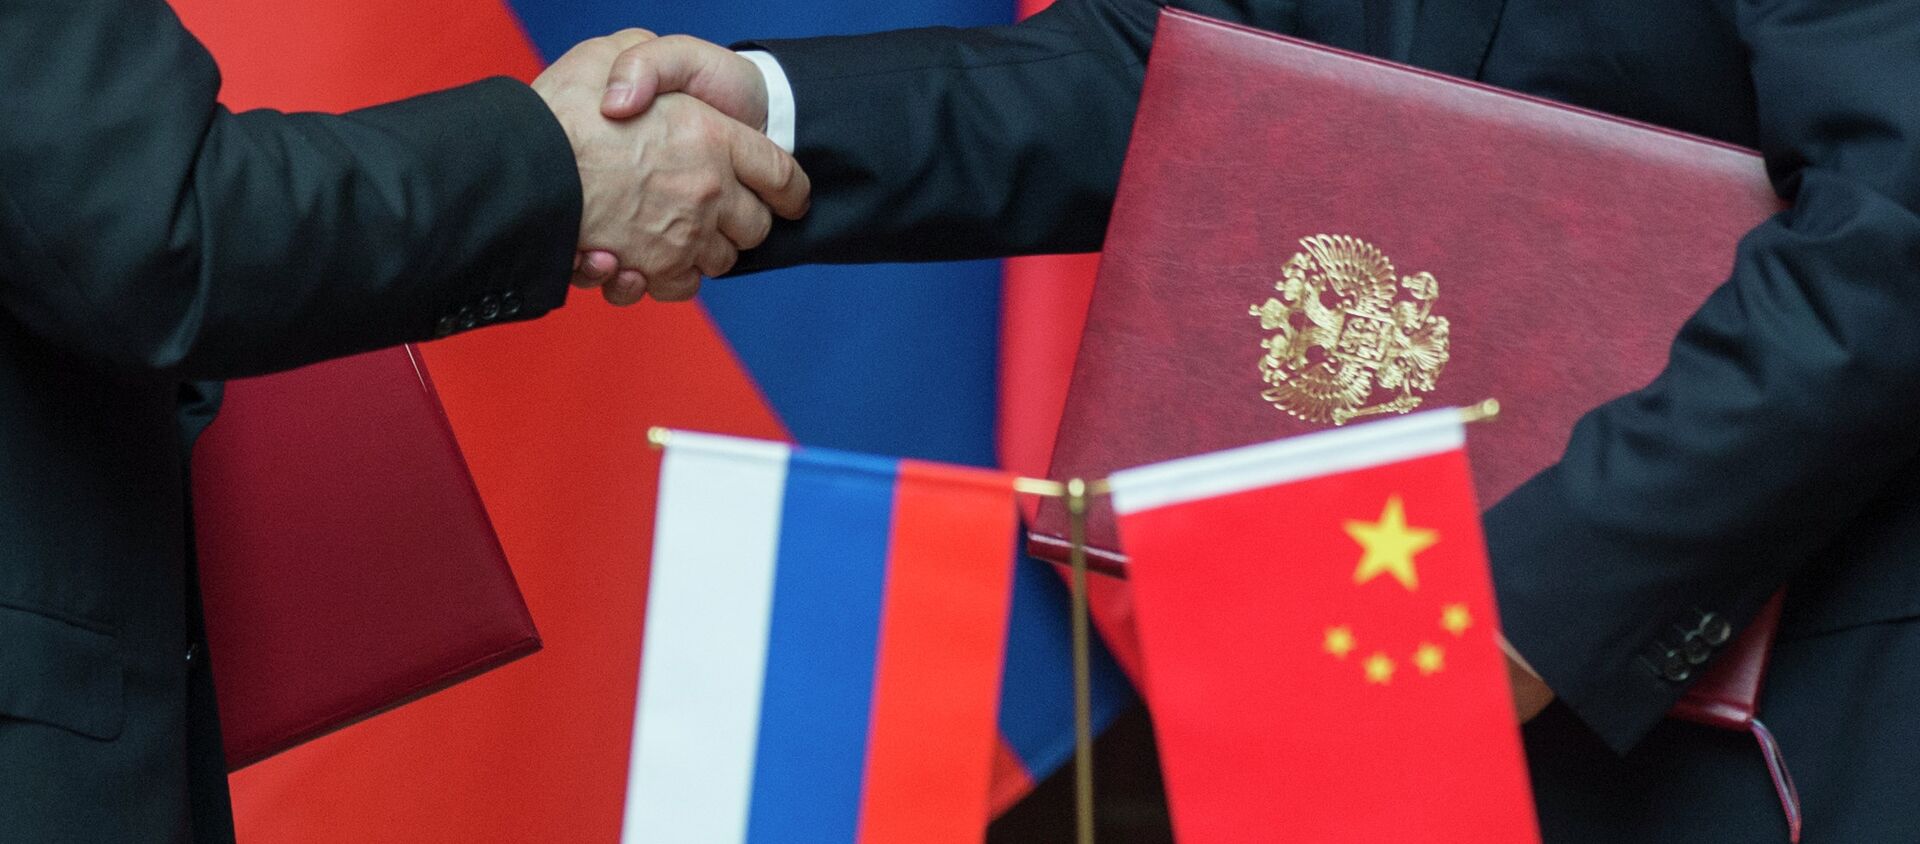 Les accords signés par Vladimir Poutine et Xi Jinping, le 20 mai 2014  - Sputnik Молдова, 1920, 25.08.2020